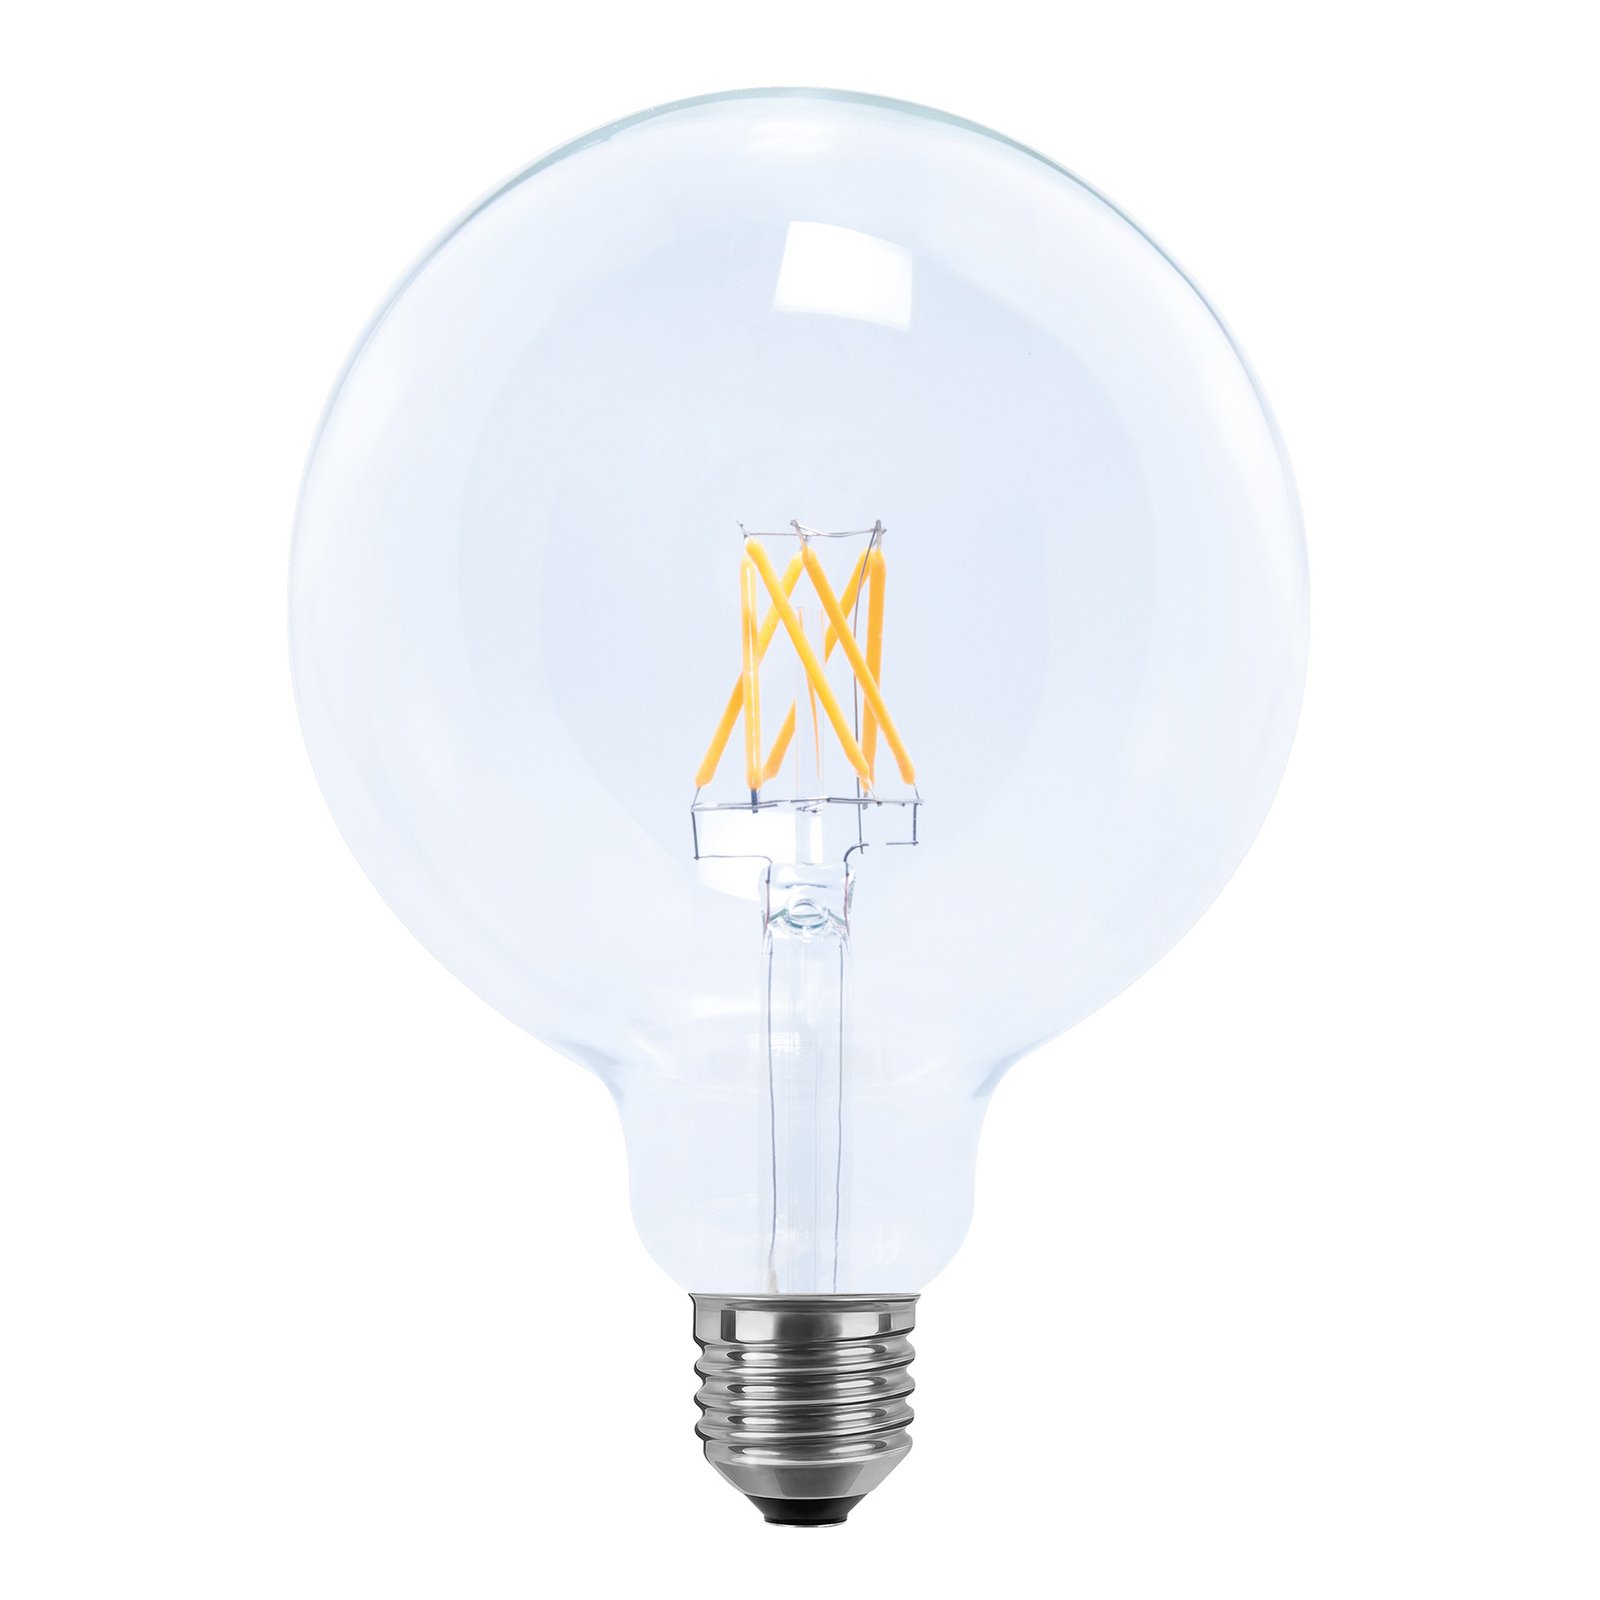 SEGULA globe LED bulb 24V E27 6W 927 filament dim